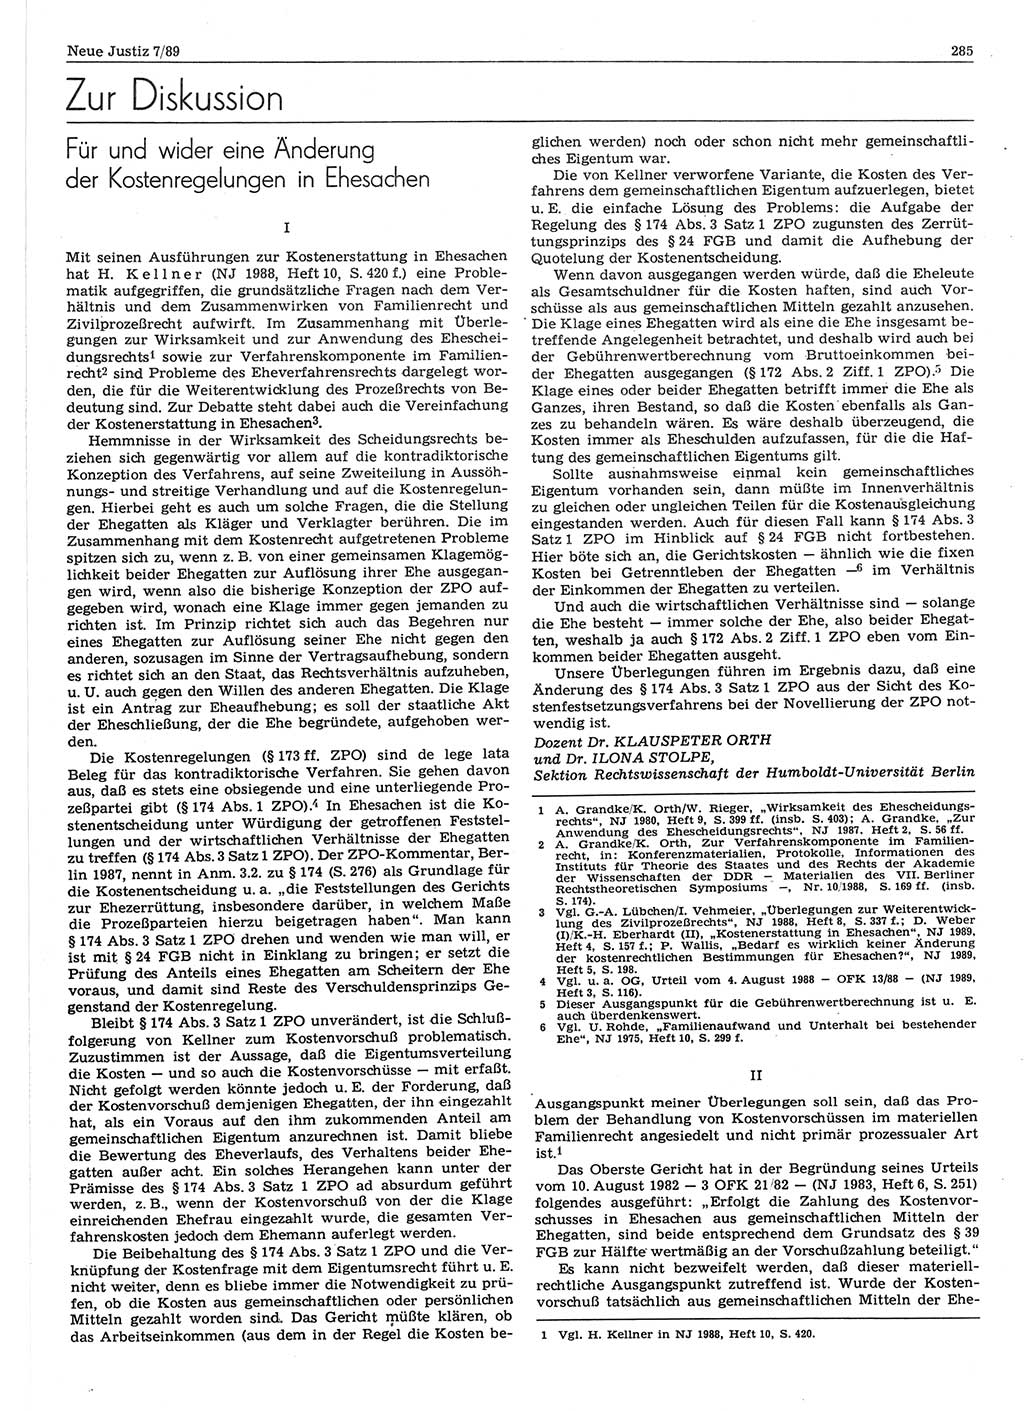 Neue Justiz (NJ), Zeitschrift für sozialistisches Recht und Gesetzlichkeit [Deutsche Demokratische Republik (DDR)], 43. Jahrgang 1989, Seite 285 (NJ DDR 1989, S. 285)